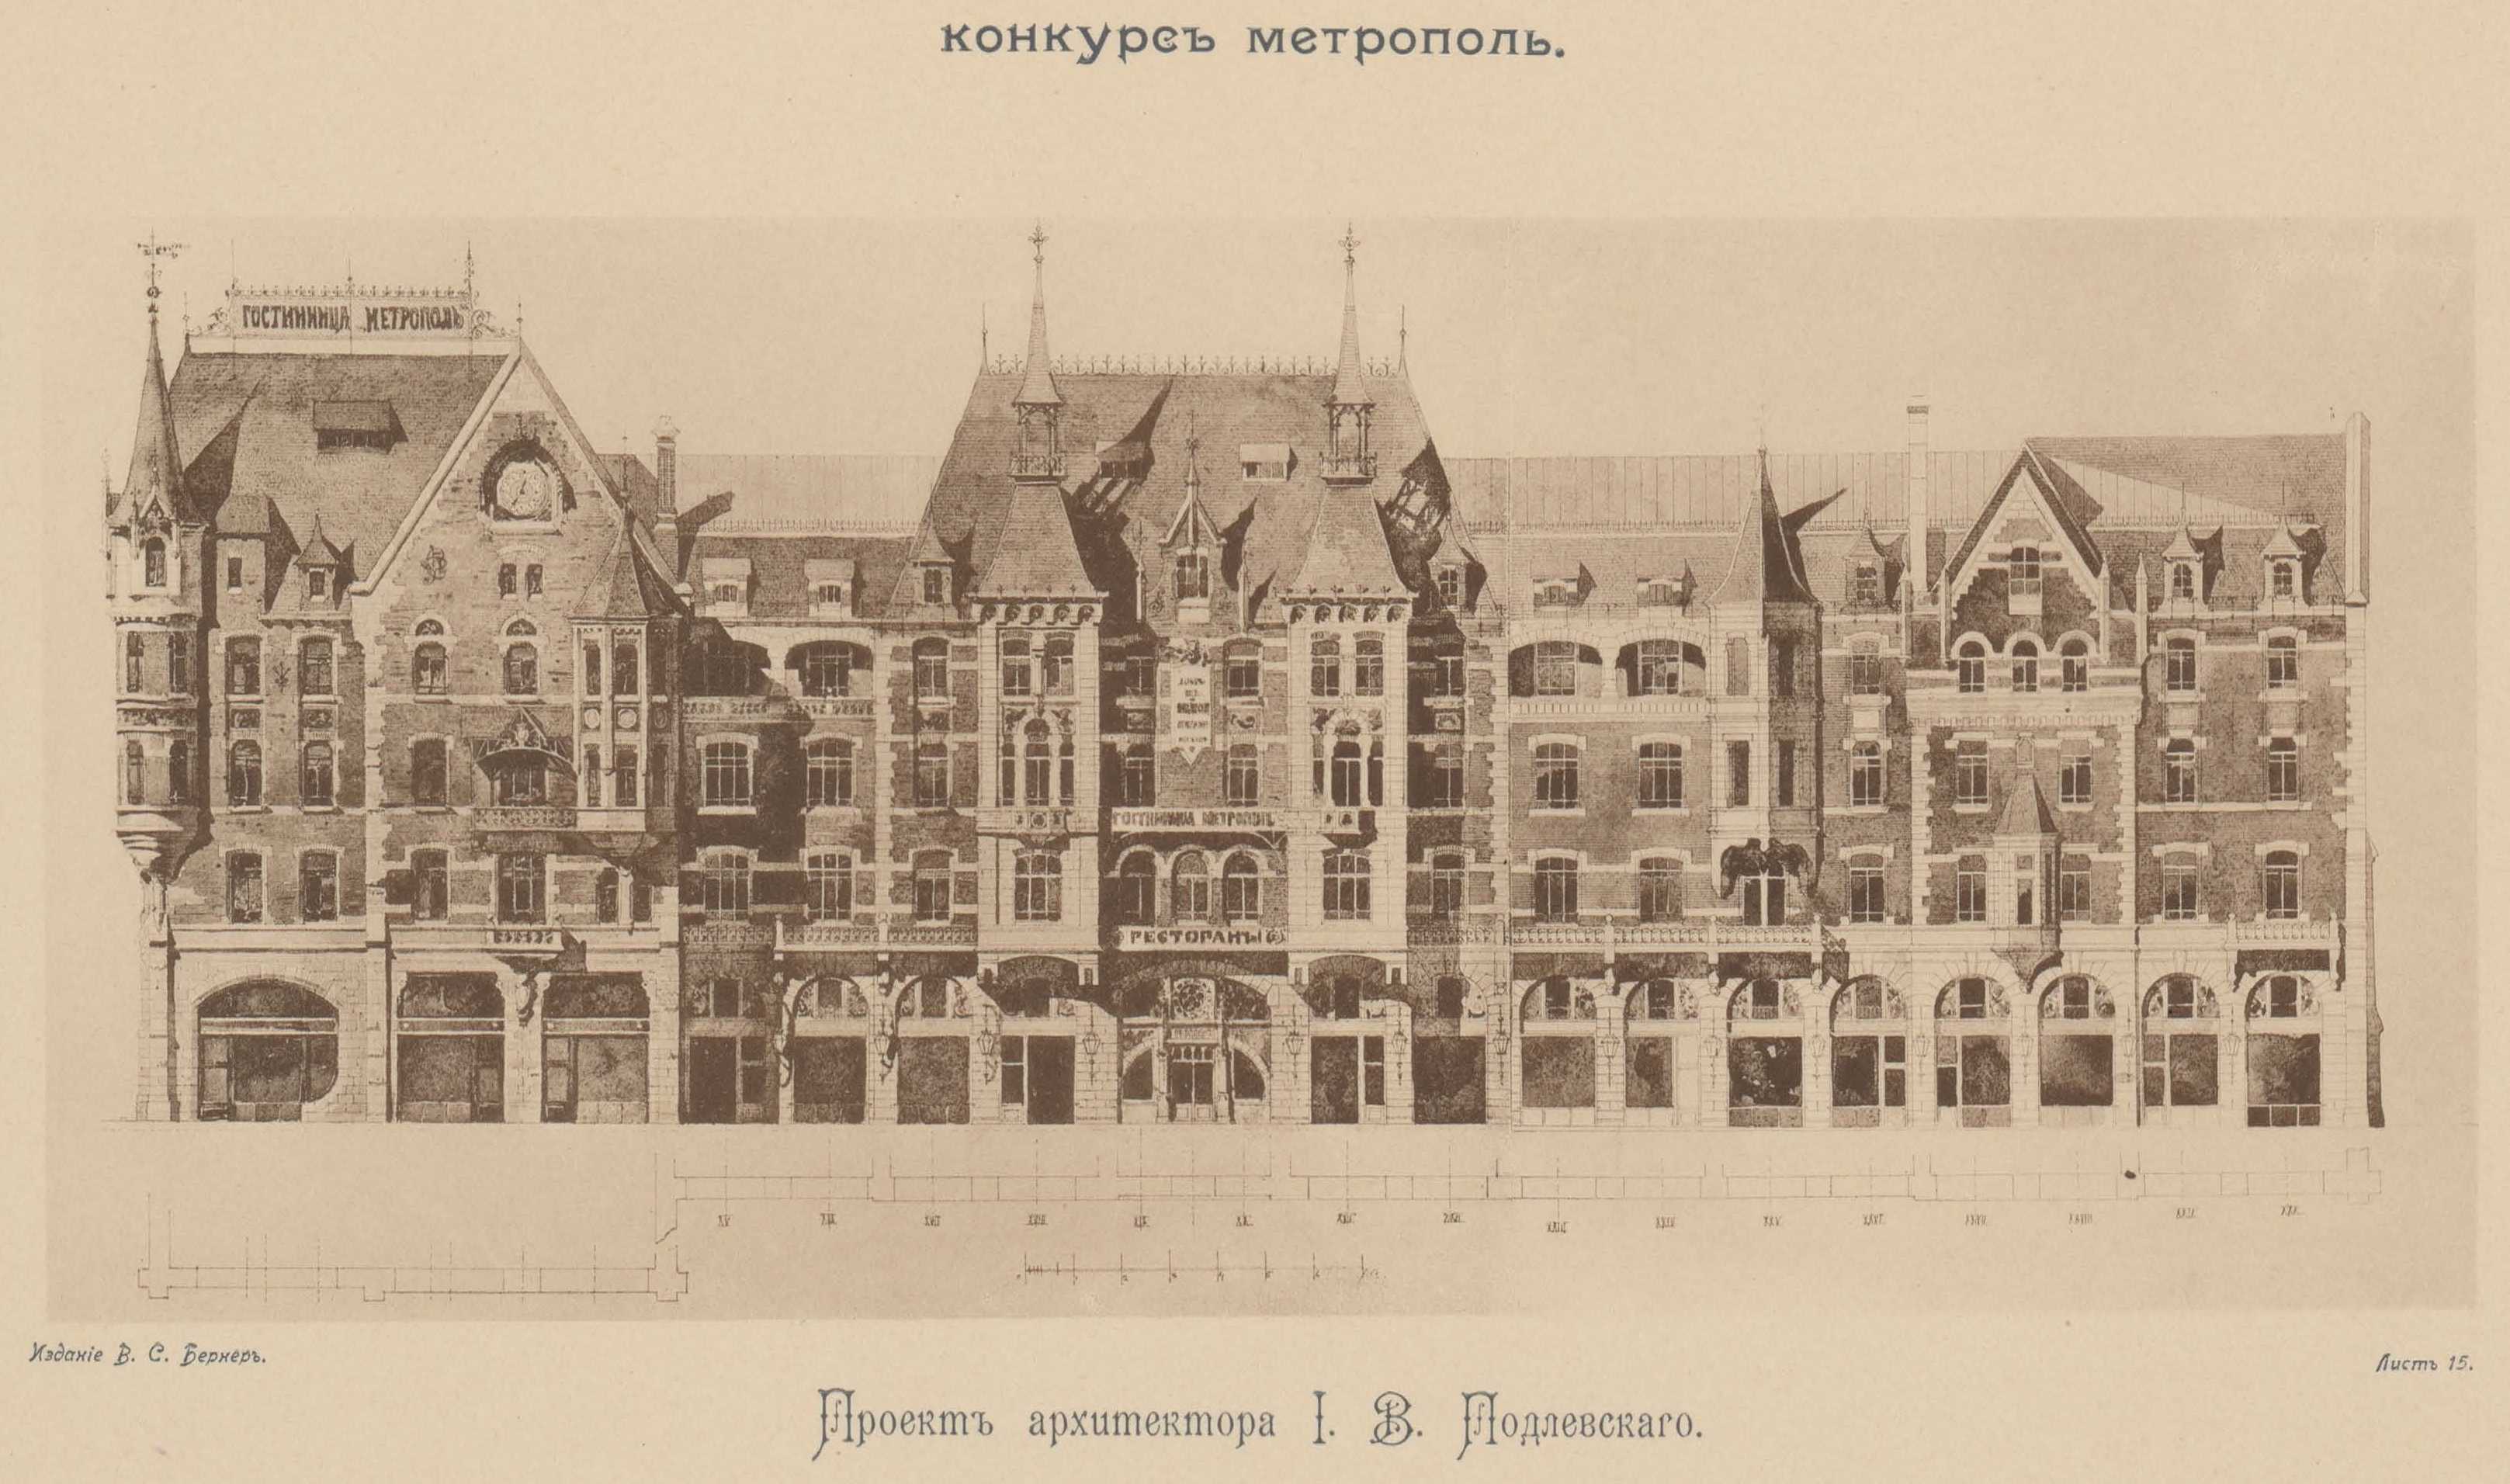 Конкурс на фасад гостиницы «Метрополь» (1899). Проект рекомендованный жюри для приобретения. Проект архитектора И. В. Падлевского